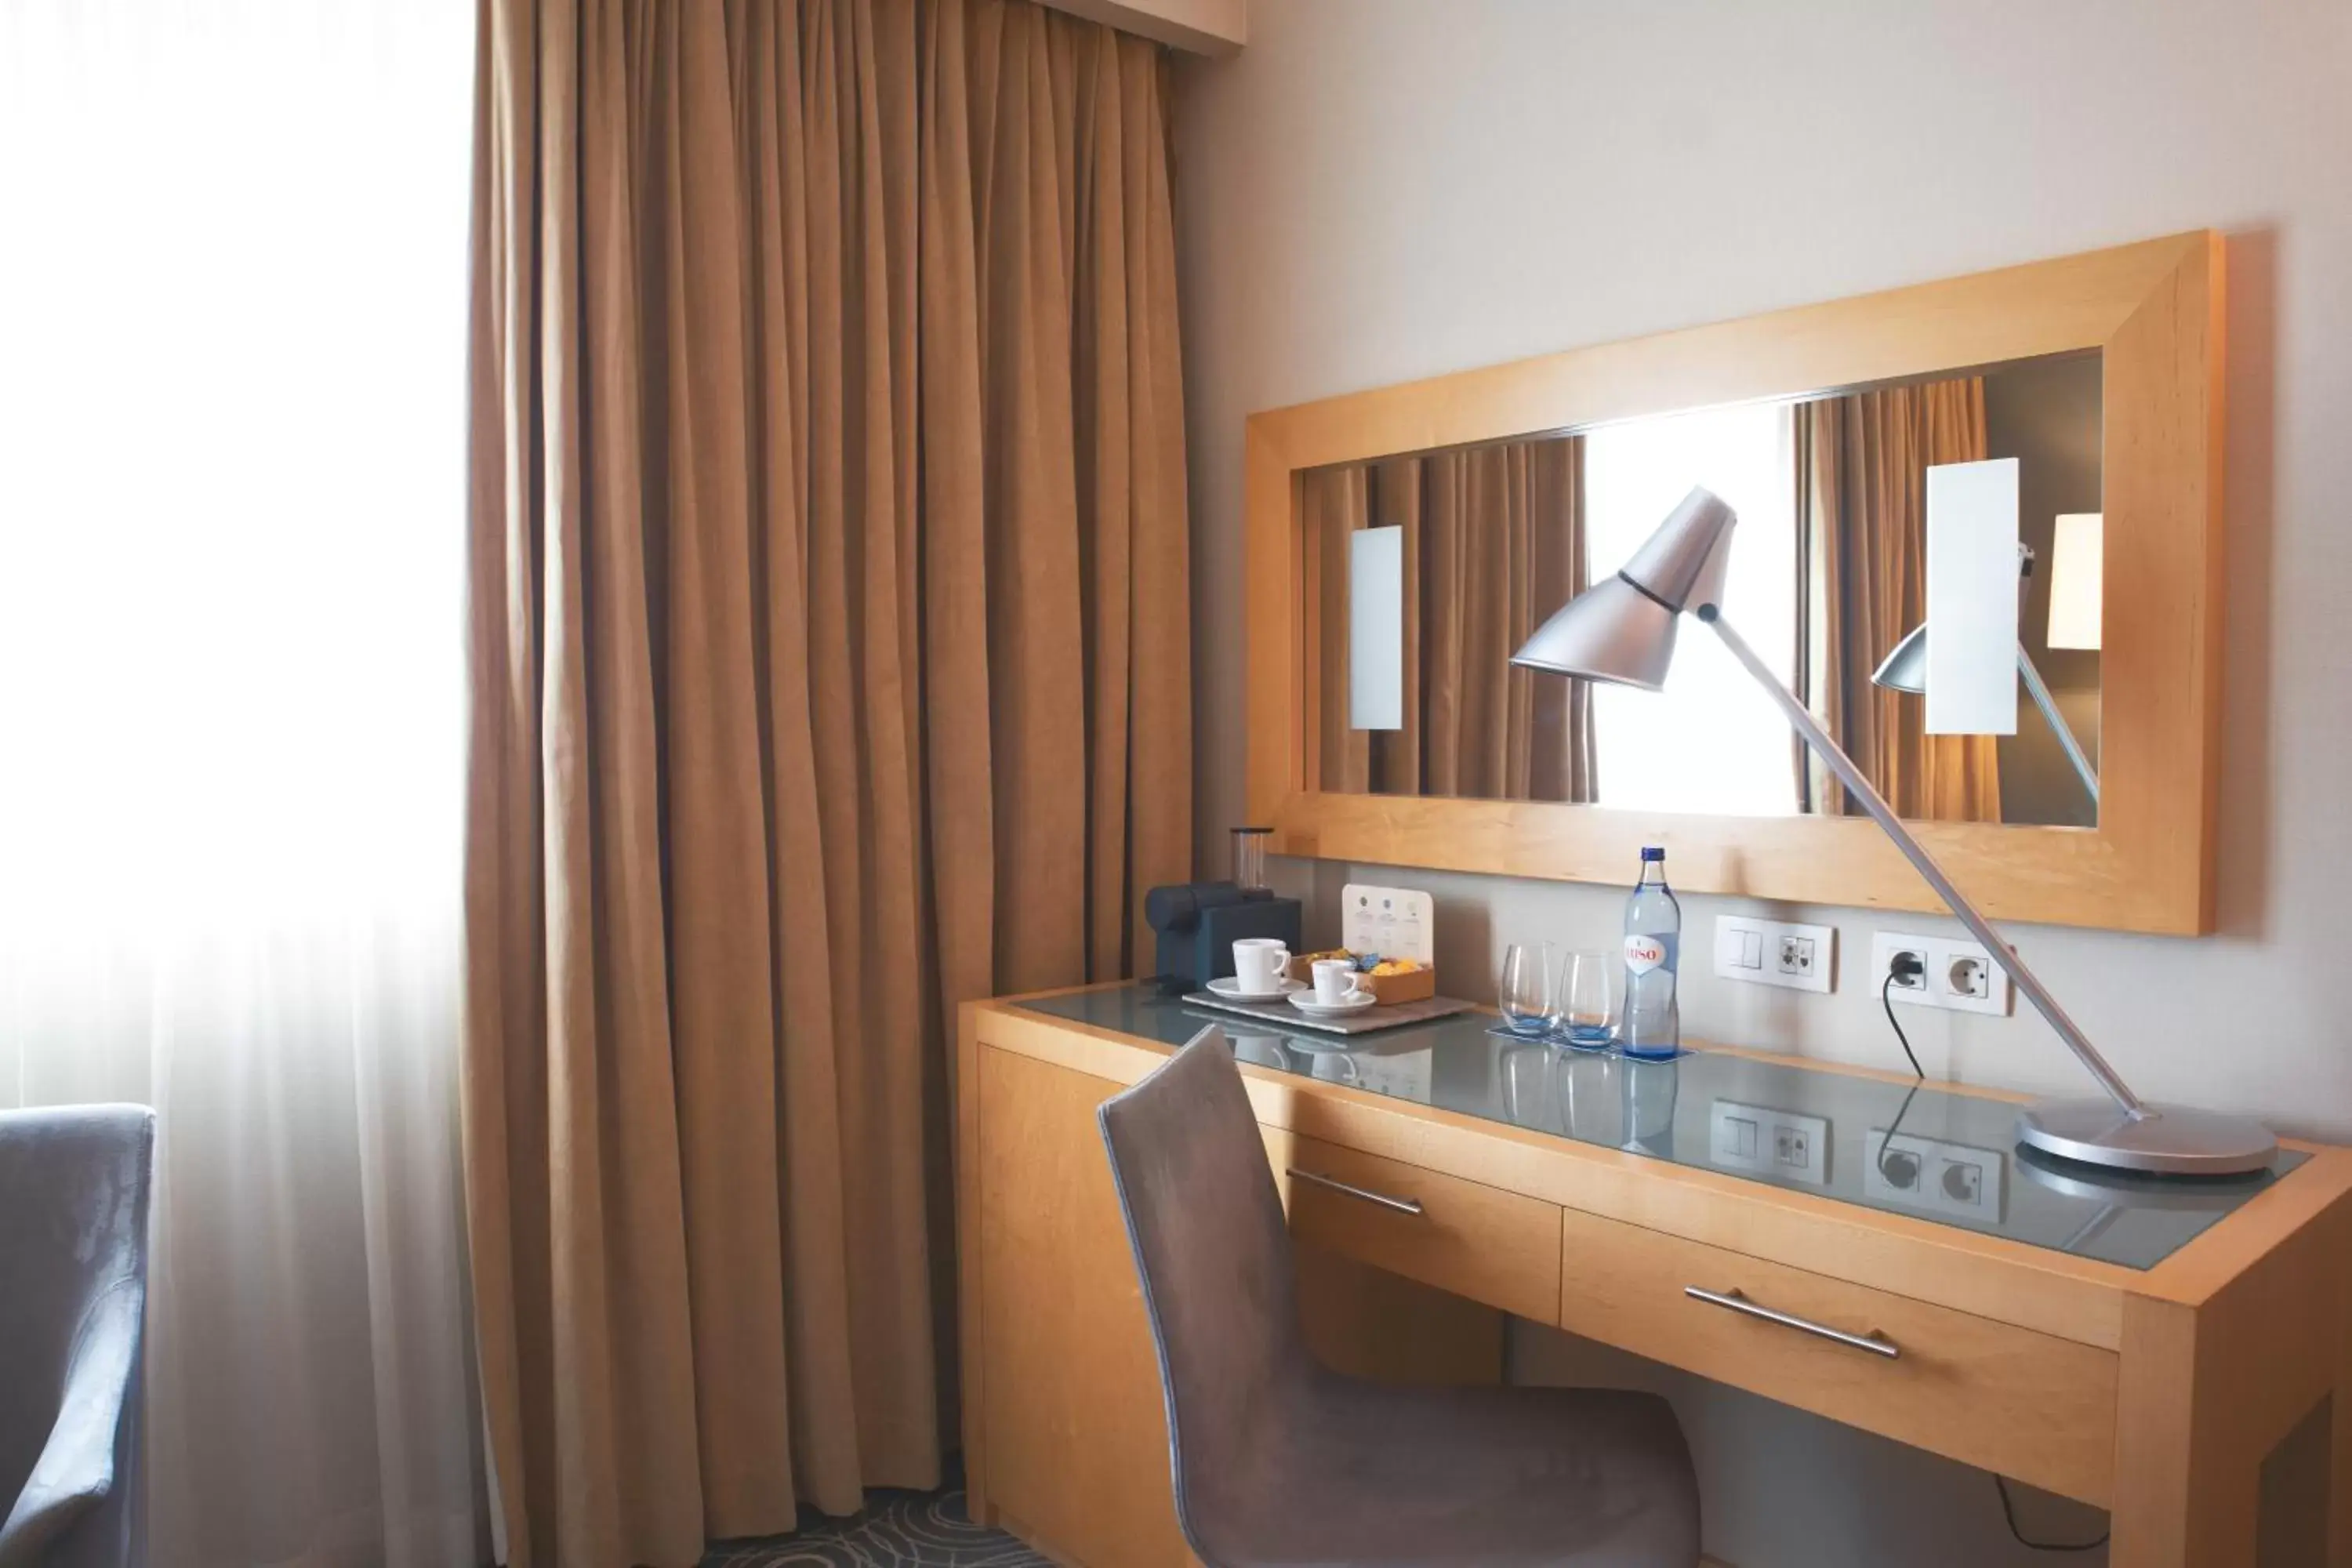 Bedroom, Bathroom in SANA Malhoa Hotel